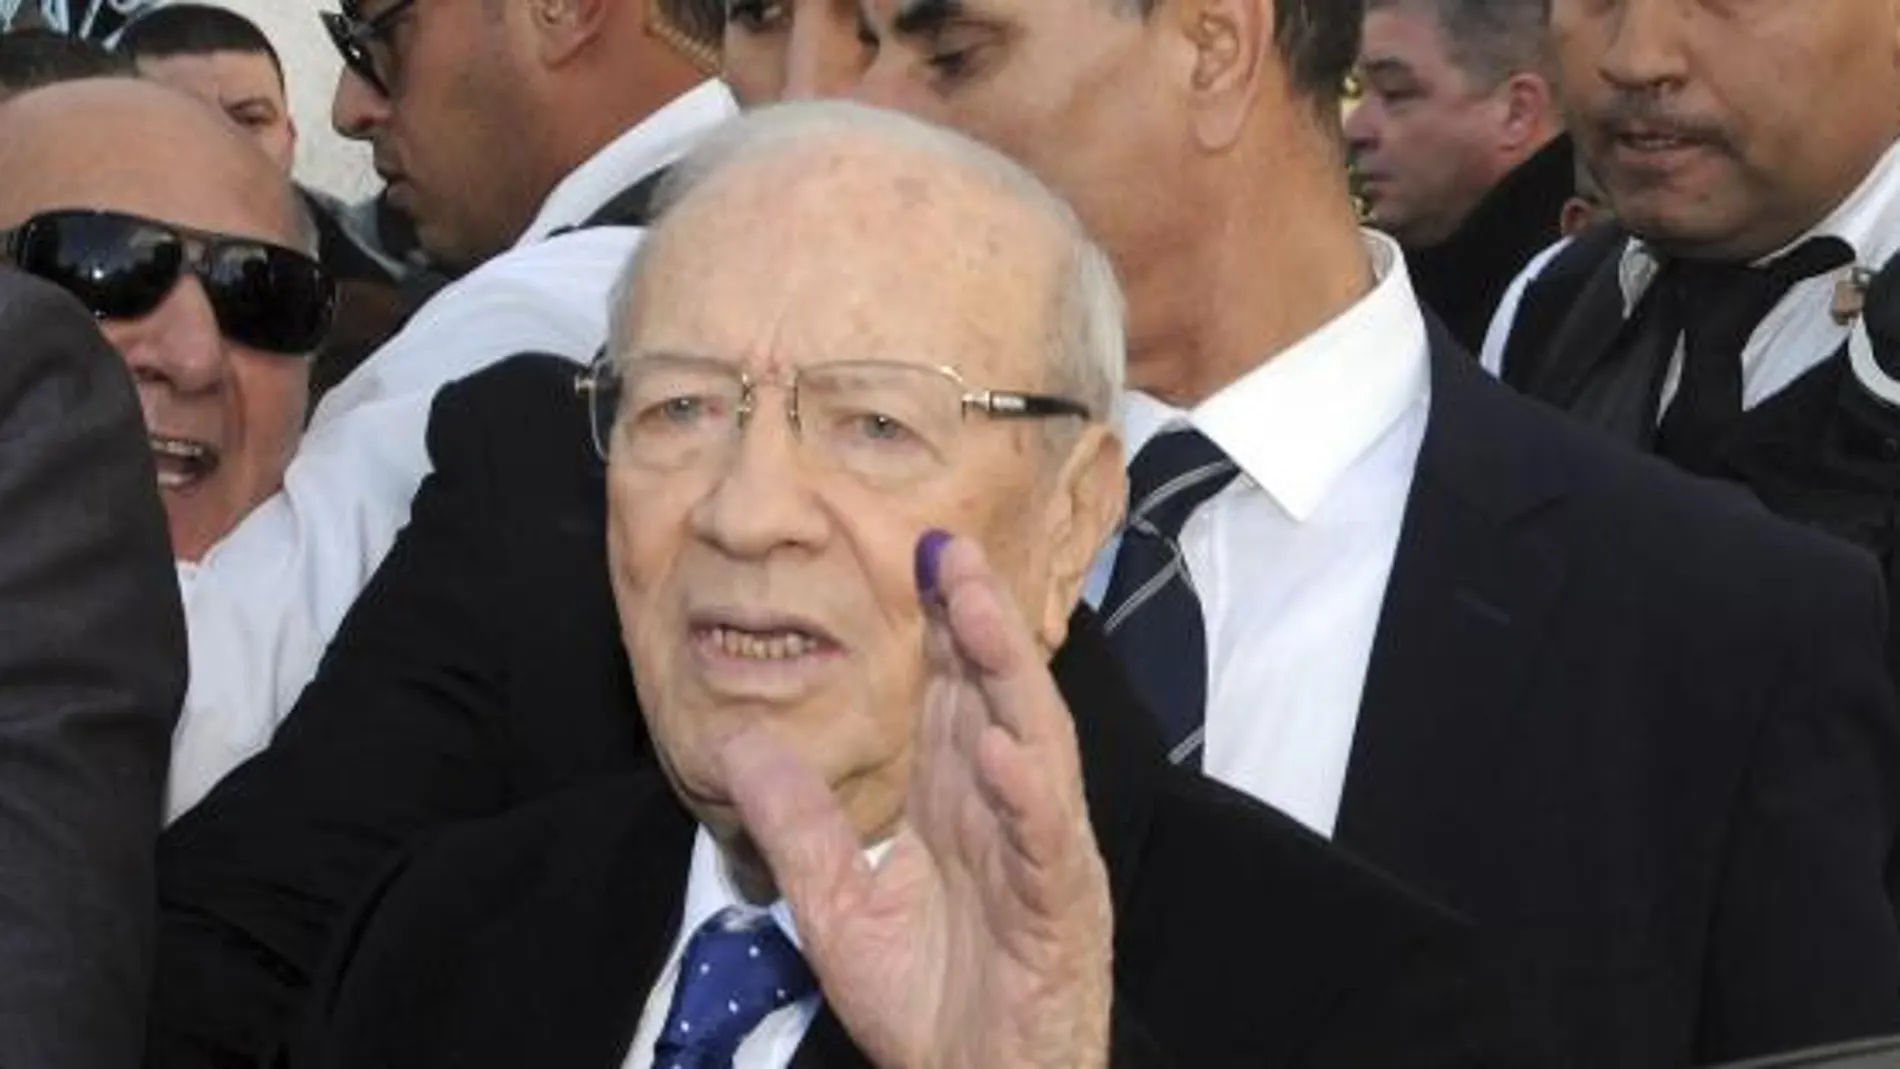 El candidato Beji Caid Essebsi saluda a sus seguidores tras depositar su voto